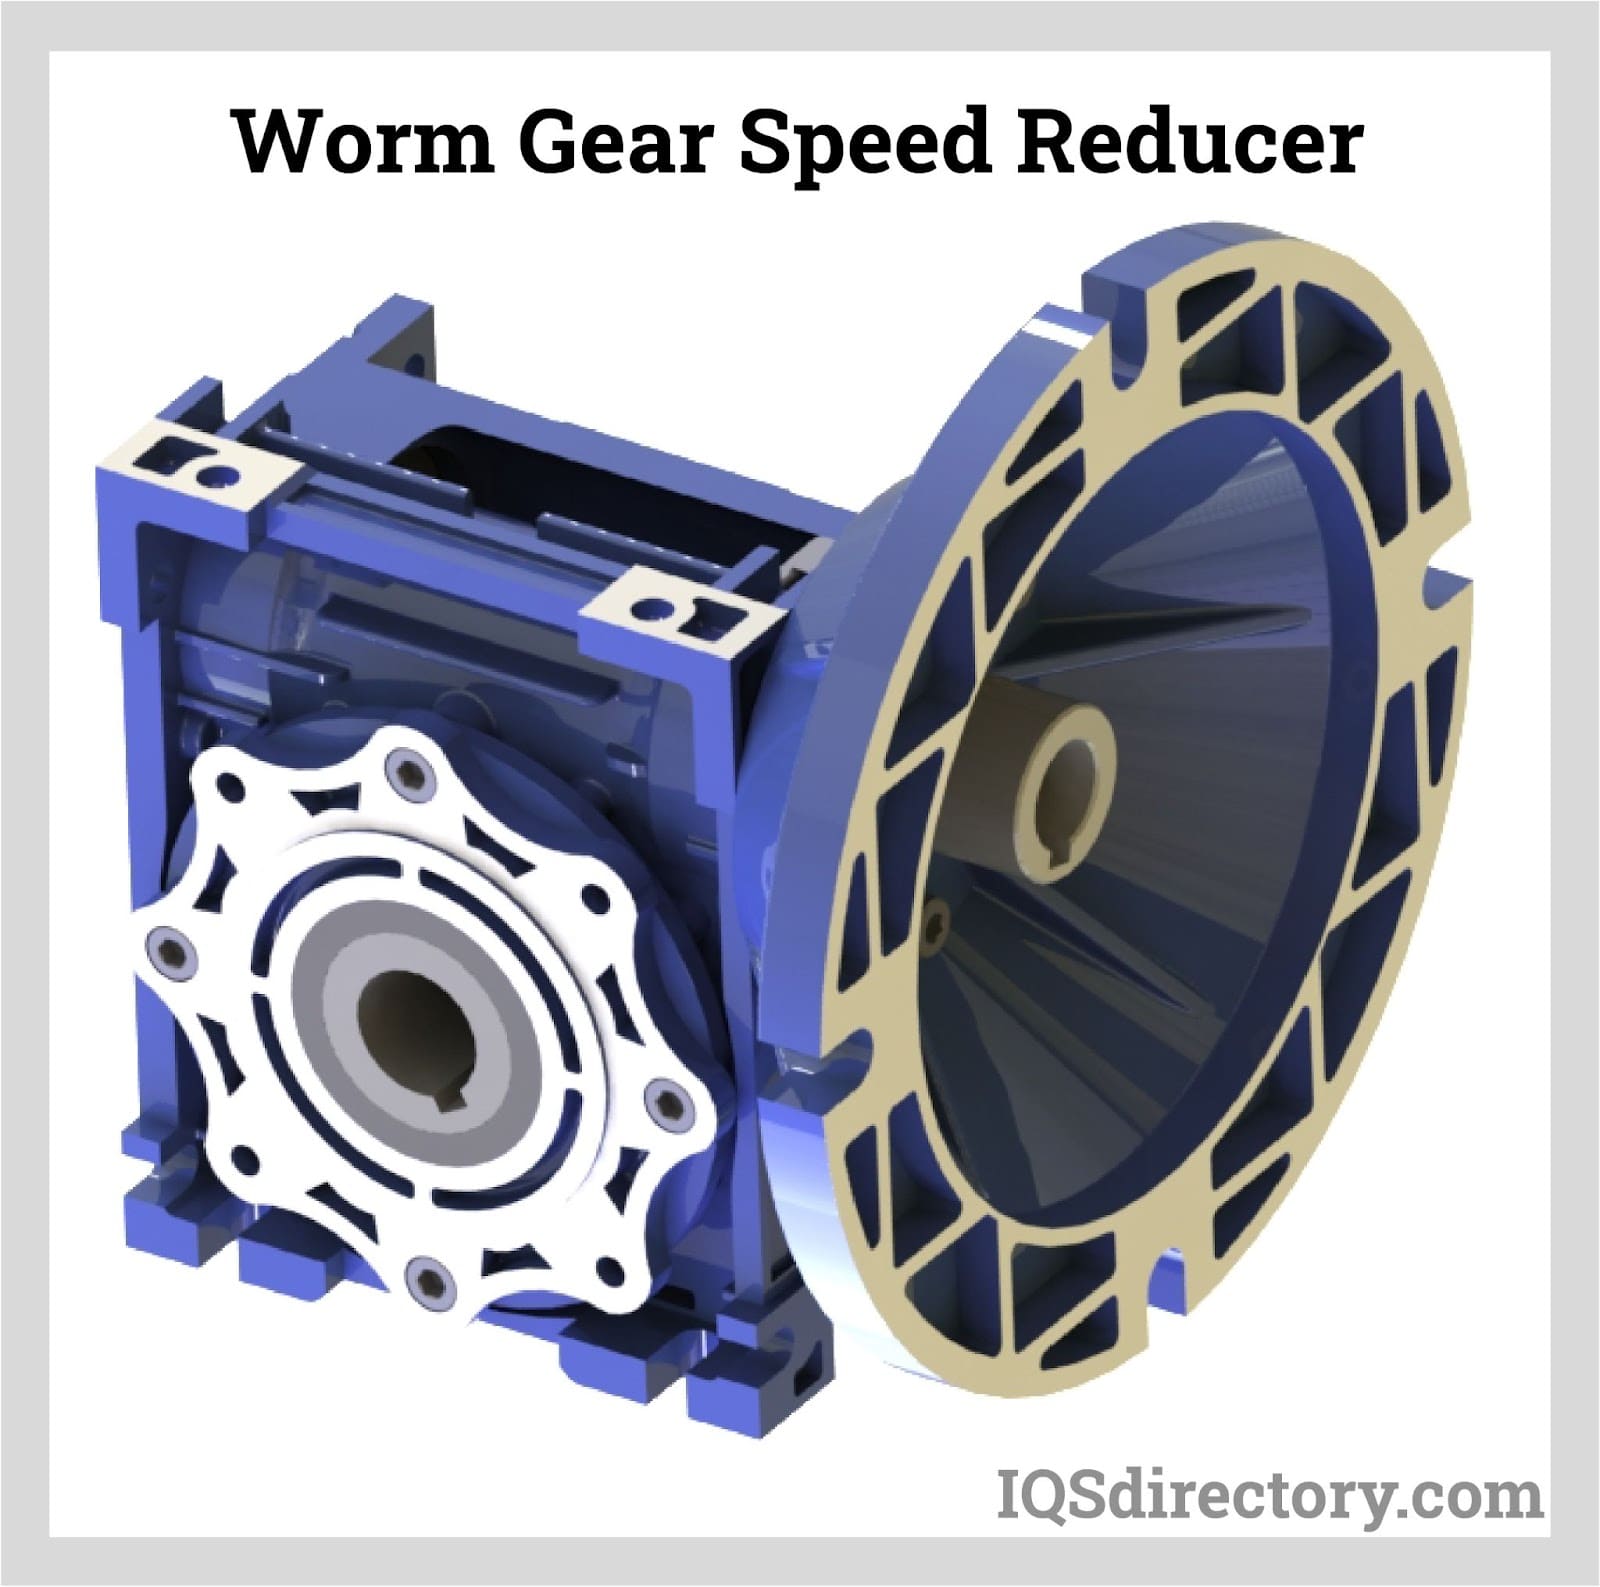 Worm Gear Speed Reducer